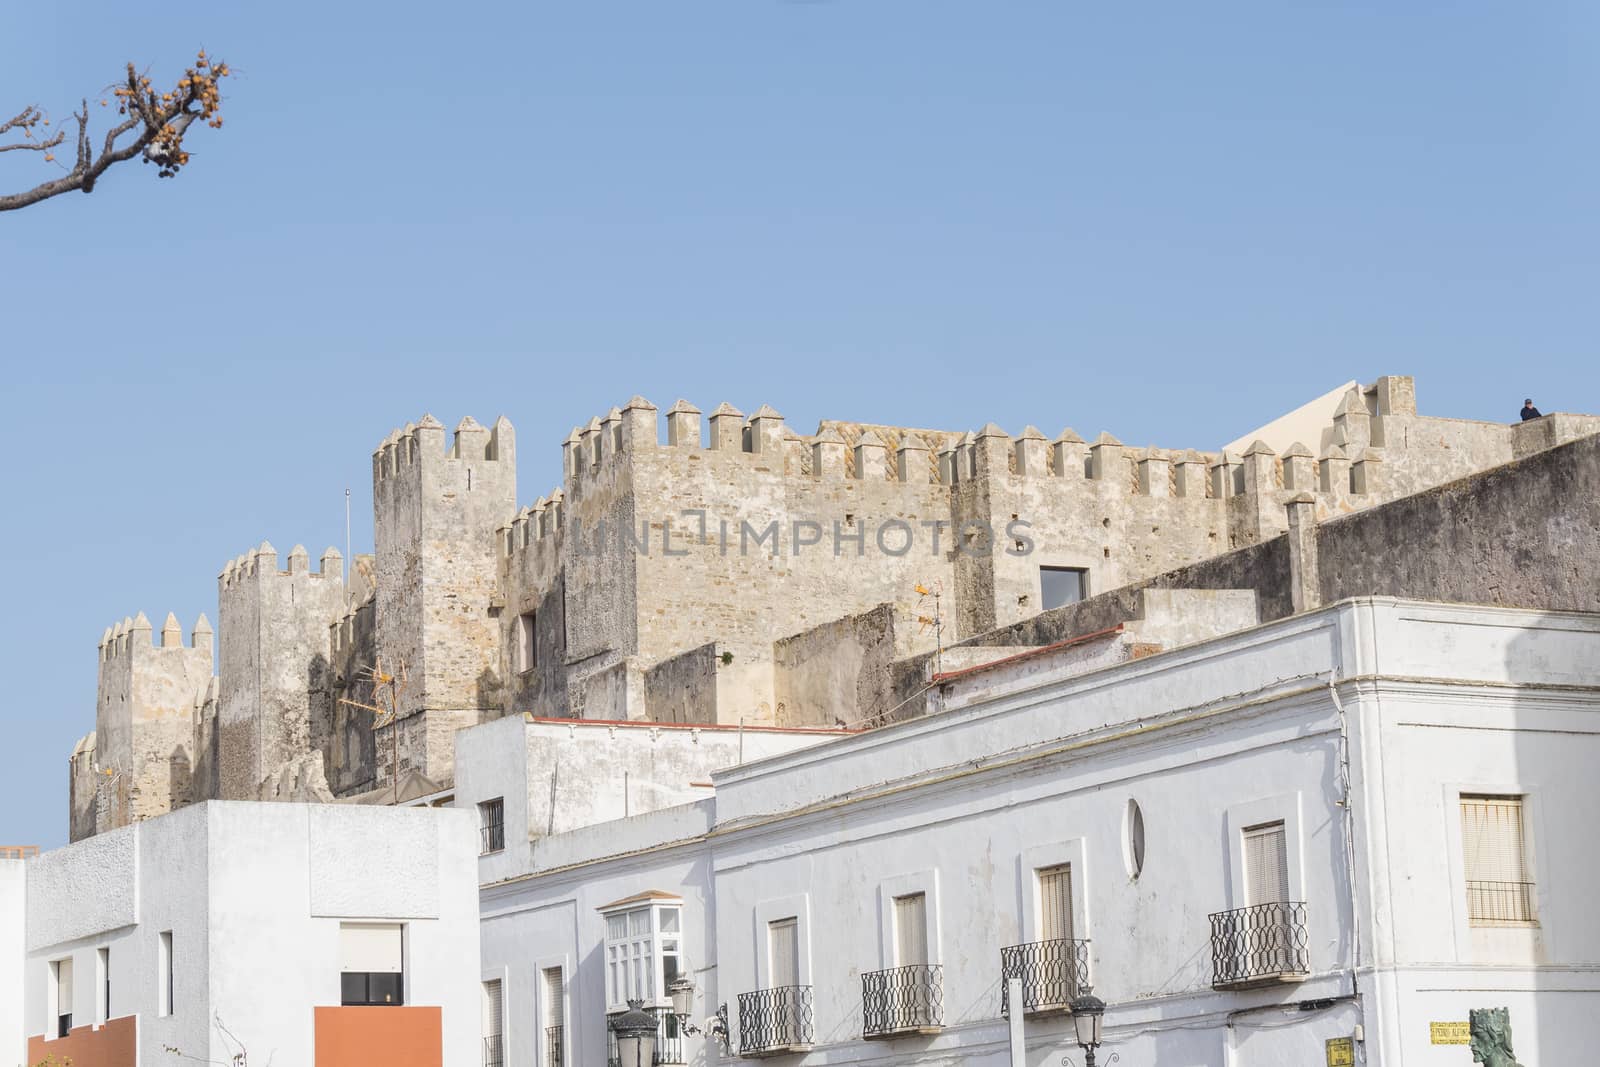 Guzman el bueno castle, Tarifa, Cadiz, Spain by max8xam